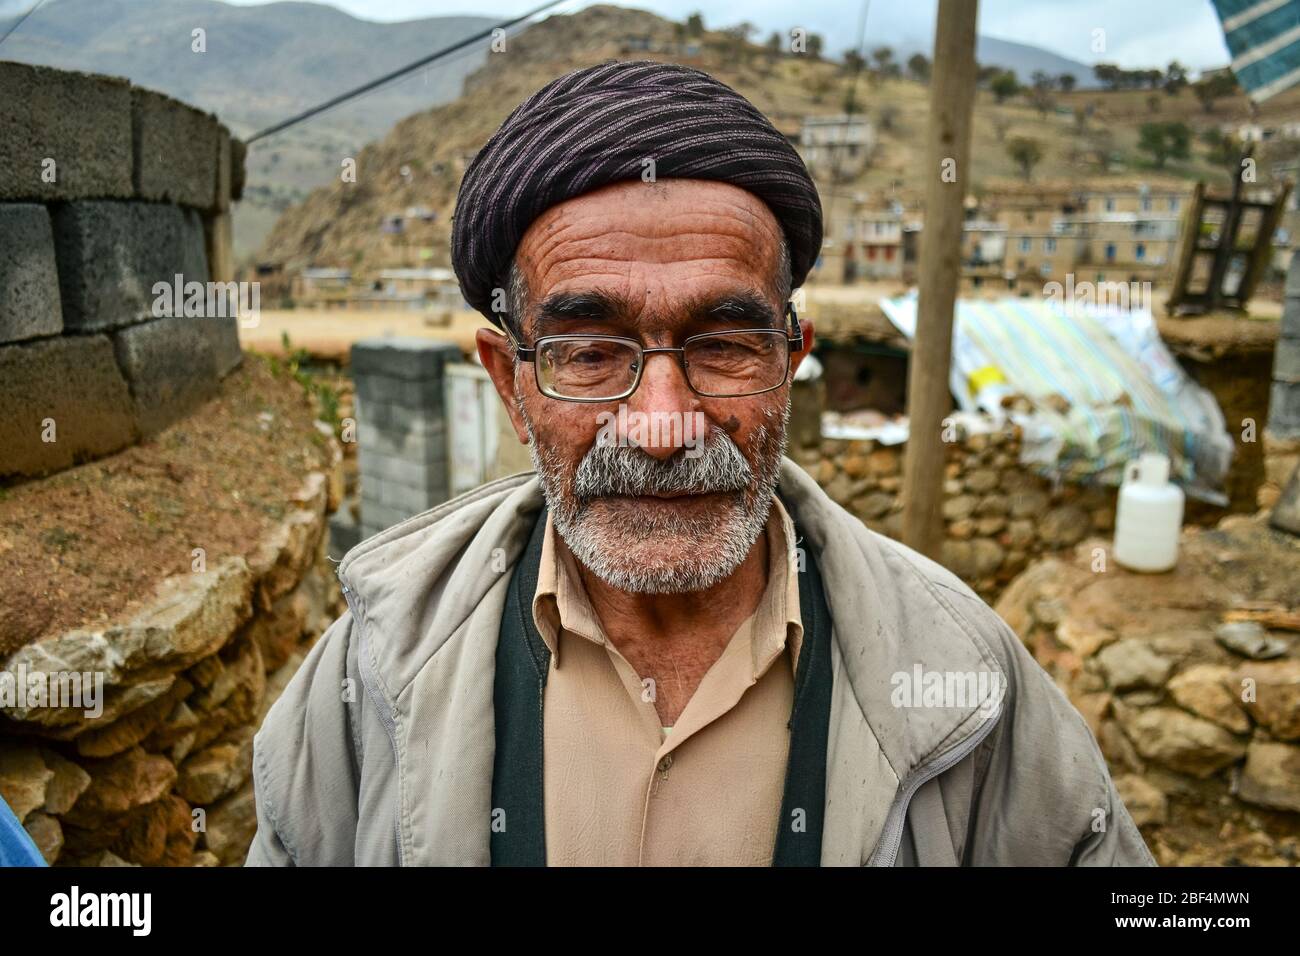 Palangan, Kurdistan iranien - 15 novembre 2013 : portrait de l'ancien homme kurde avec visage plein de rides, de lunettes et de barbe blanche Banque D'Images